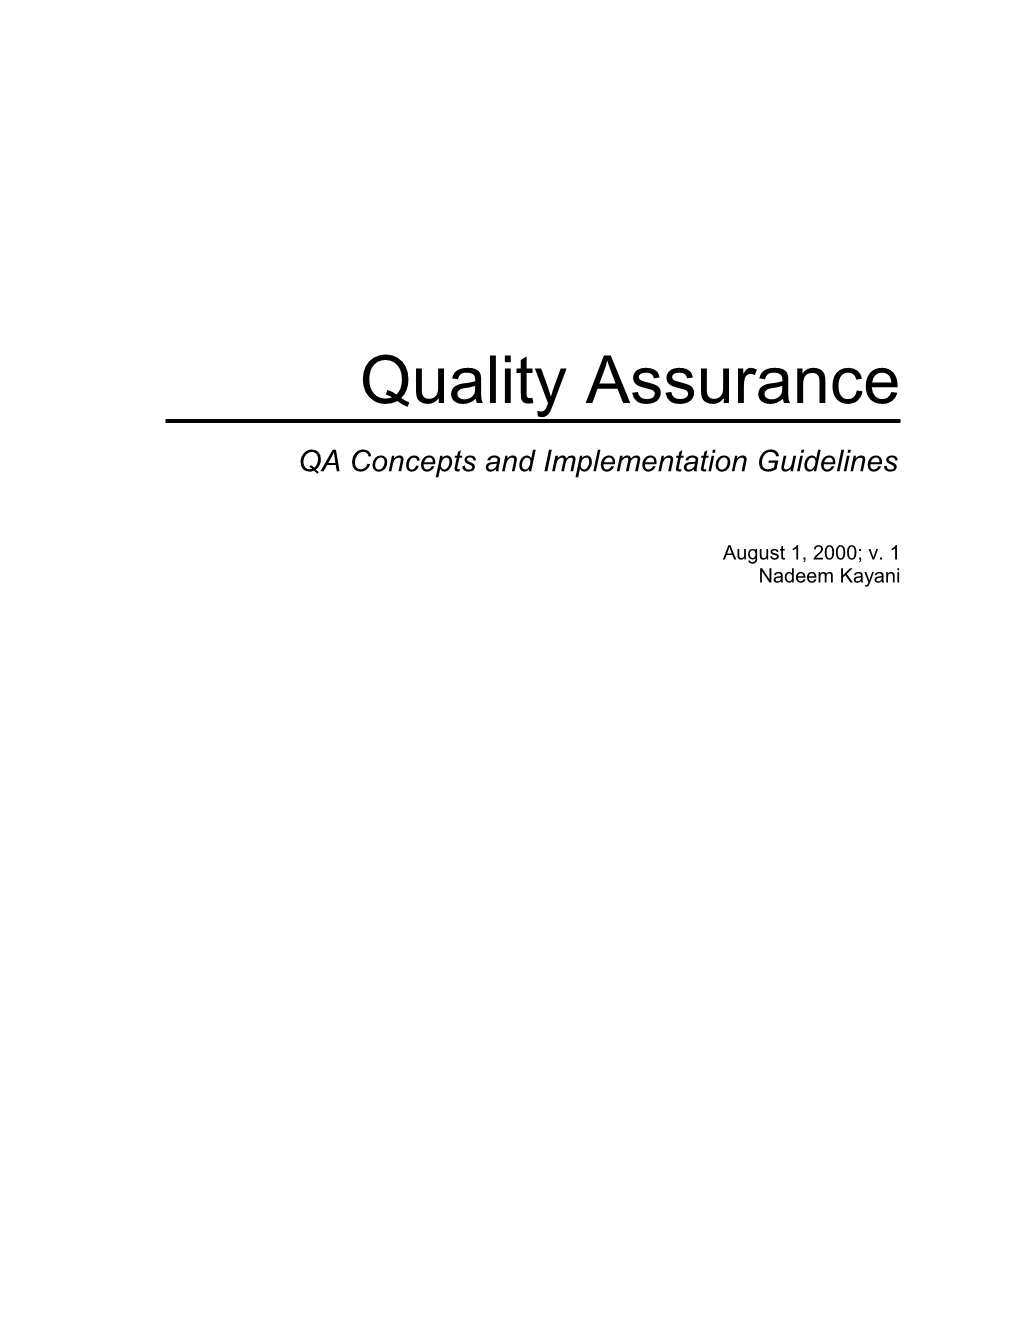 Quality Assurance Guidlines, V. 1